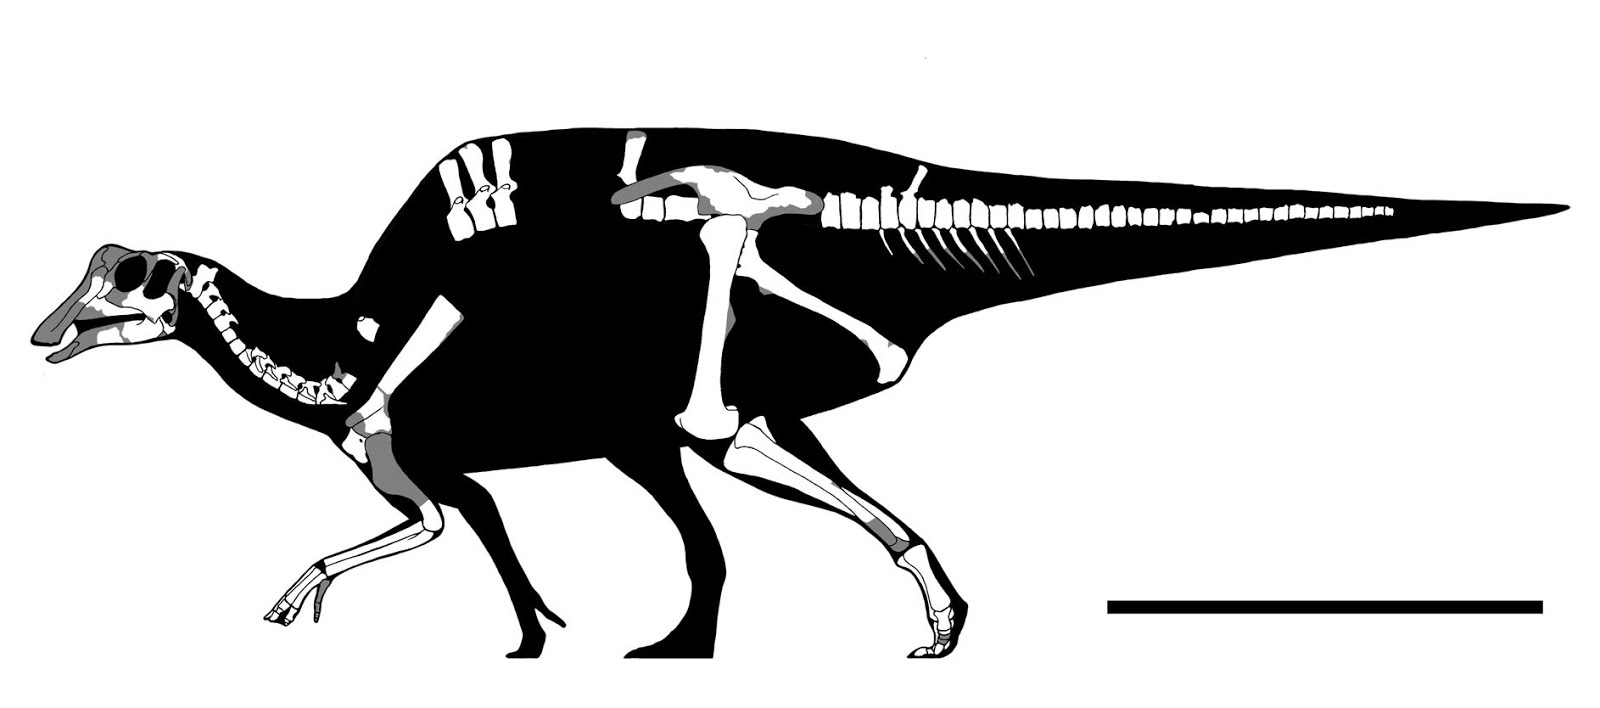 Nipponosaurus_sachalinensis-Nagao_1936-2018_Takasaki_Chiba_Kobayashi_et-al--%2540GET_AWAY_TRIKE.jpg